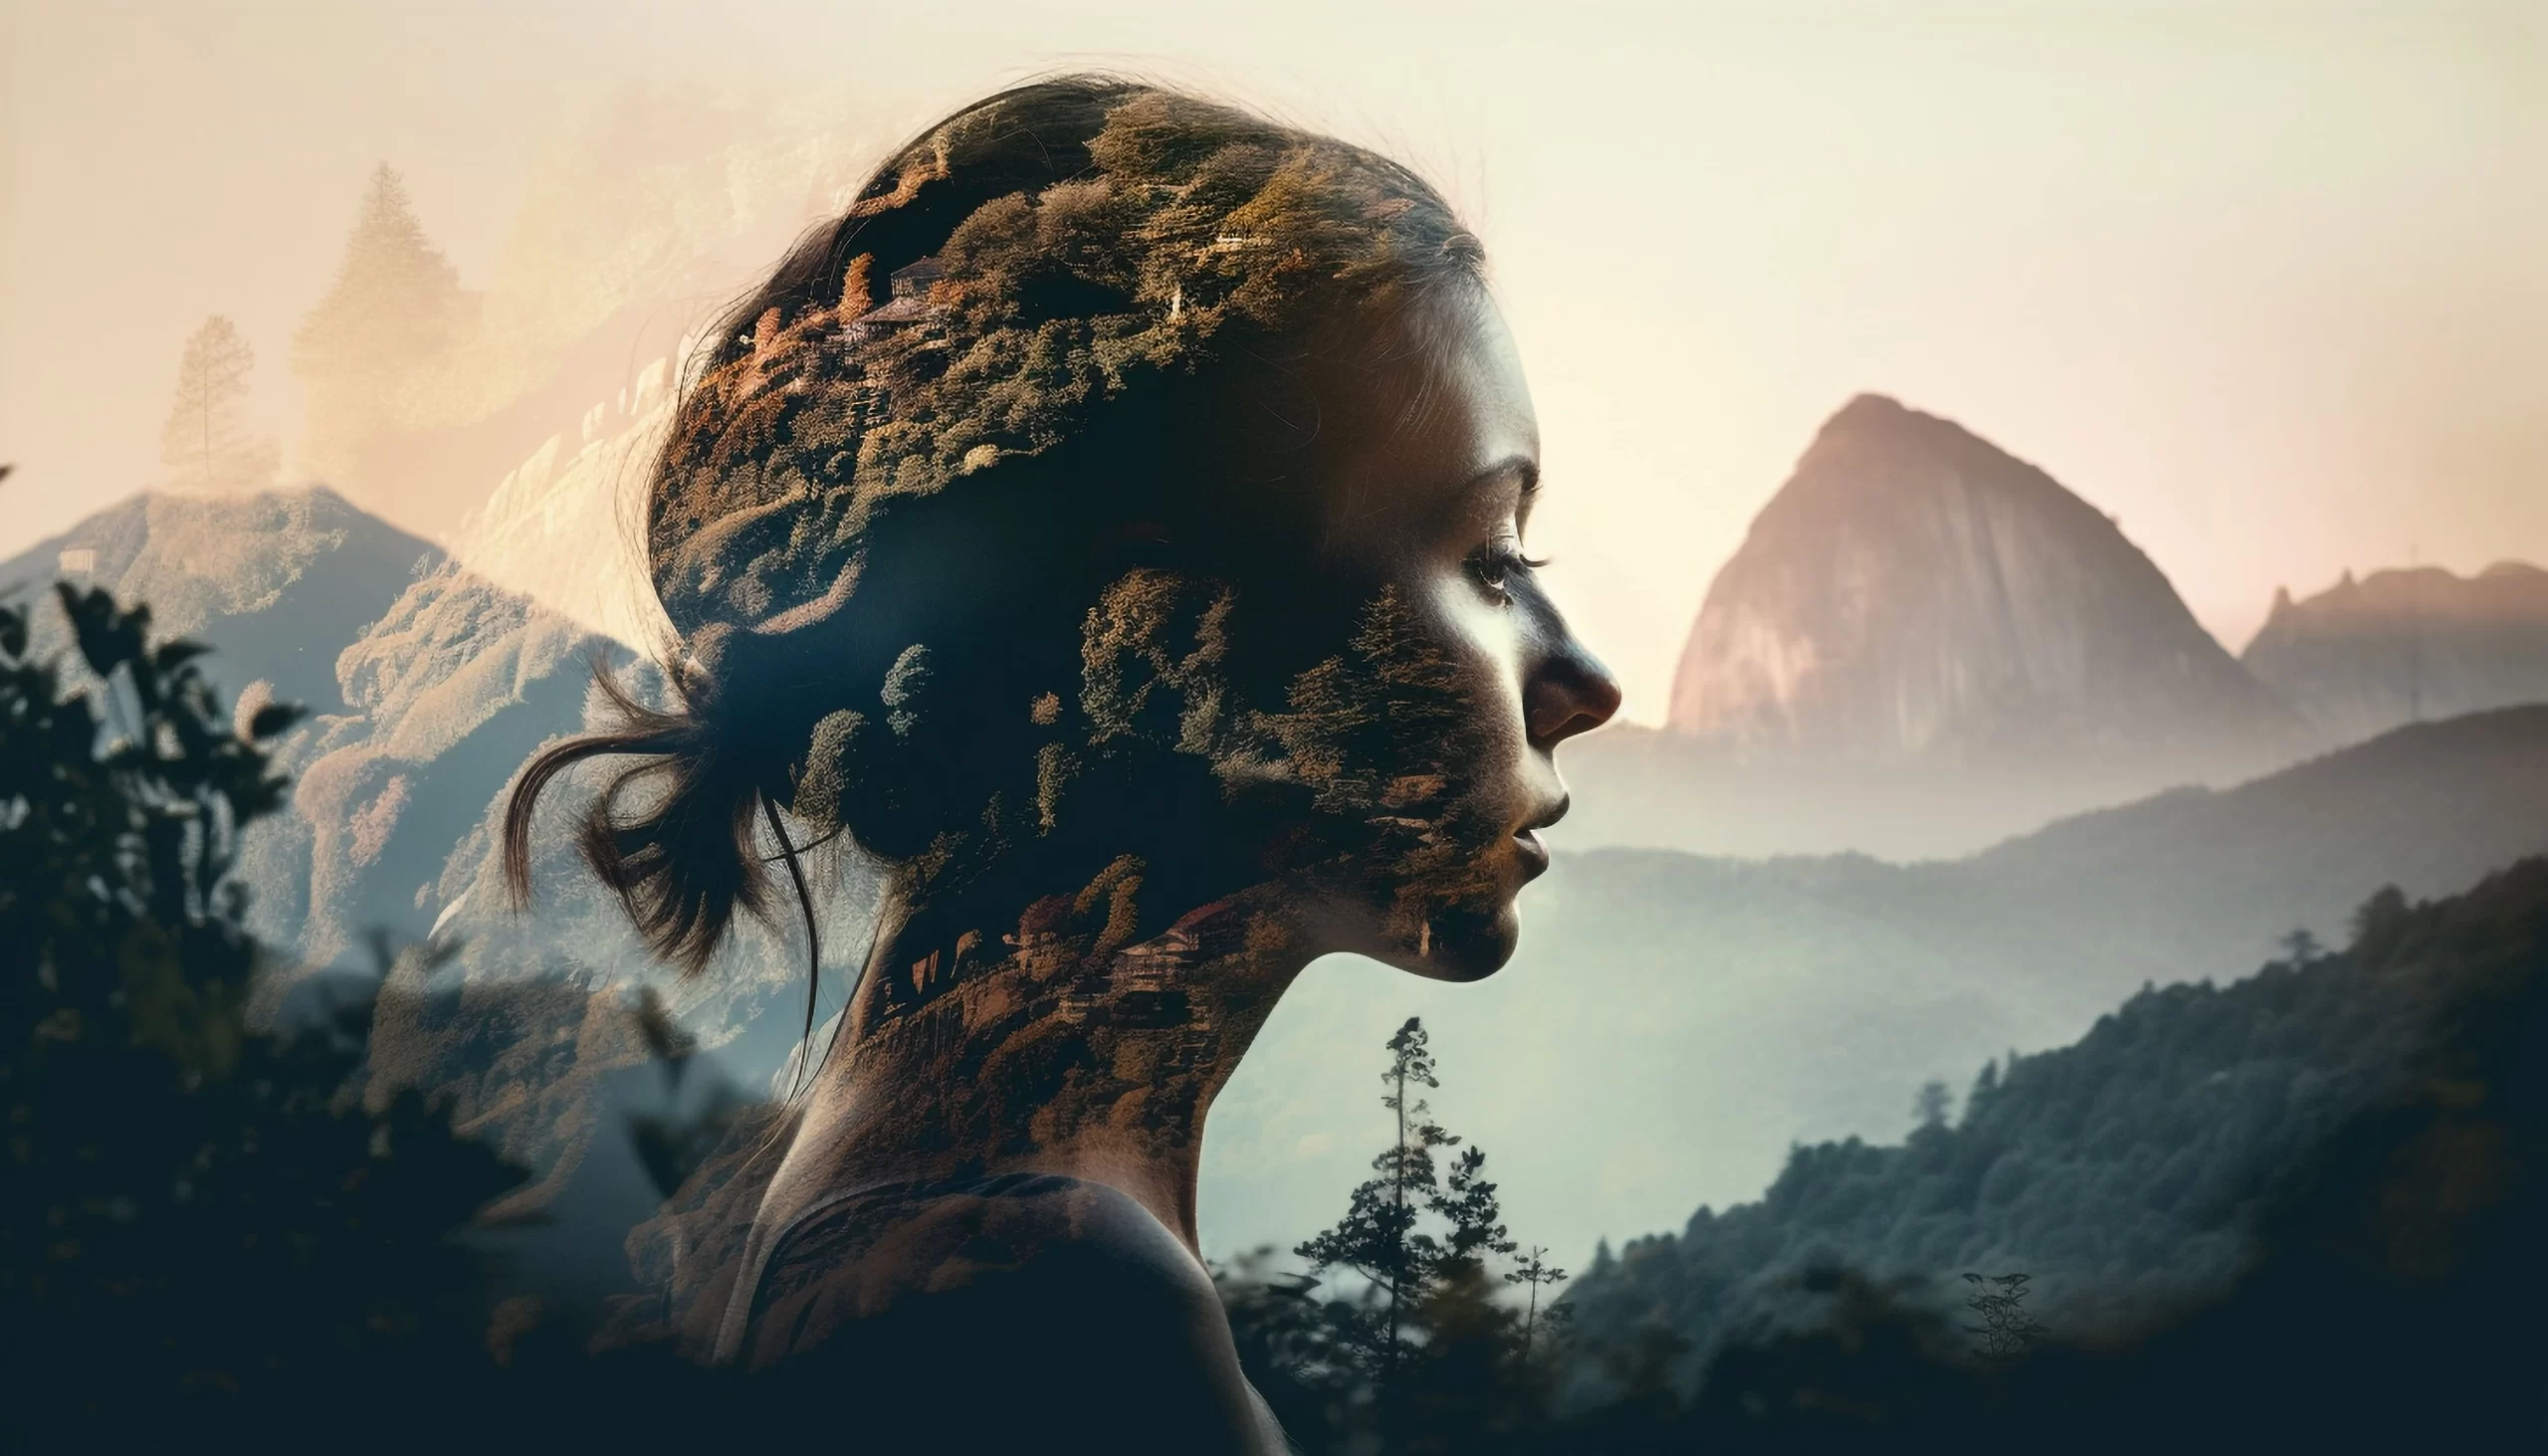 Silhueta do rosto de uma mulher de perfil se misturando à paisagem com árvores e montanhas